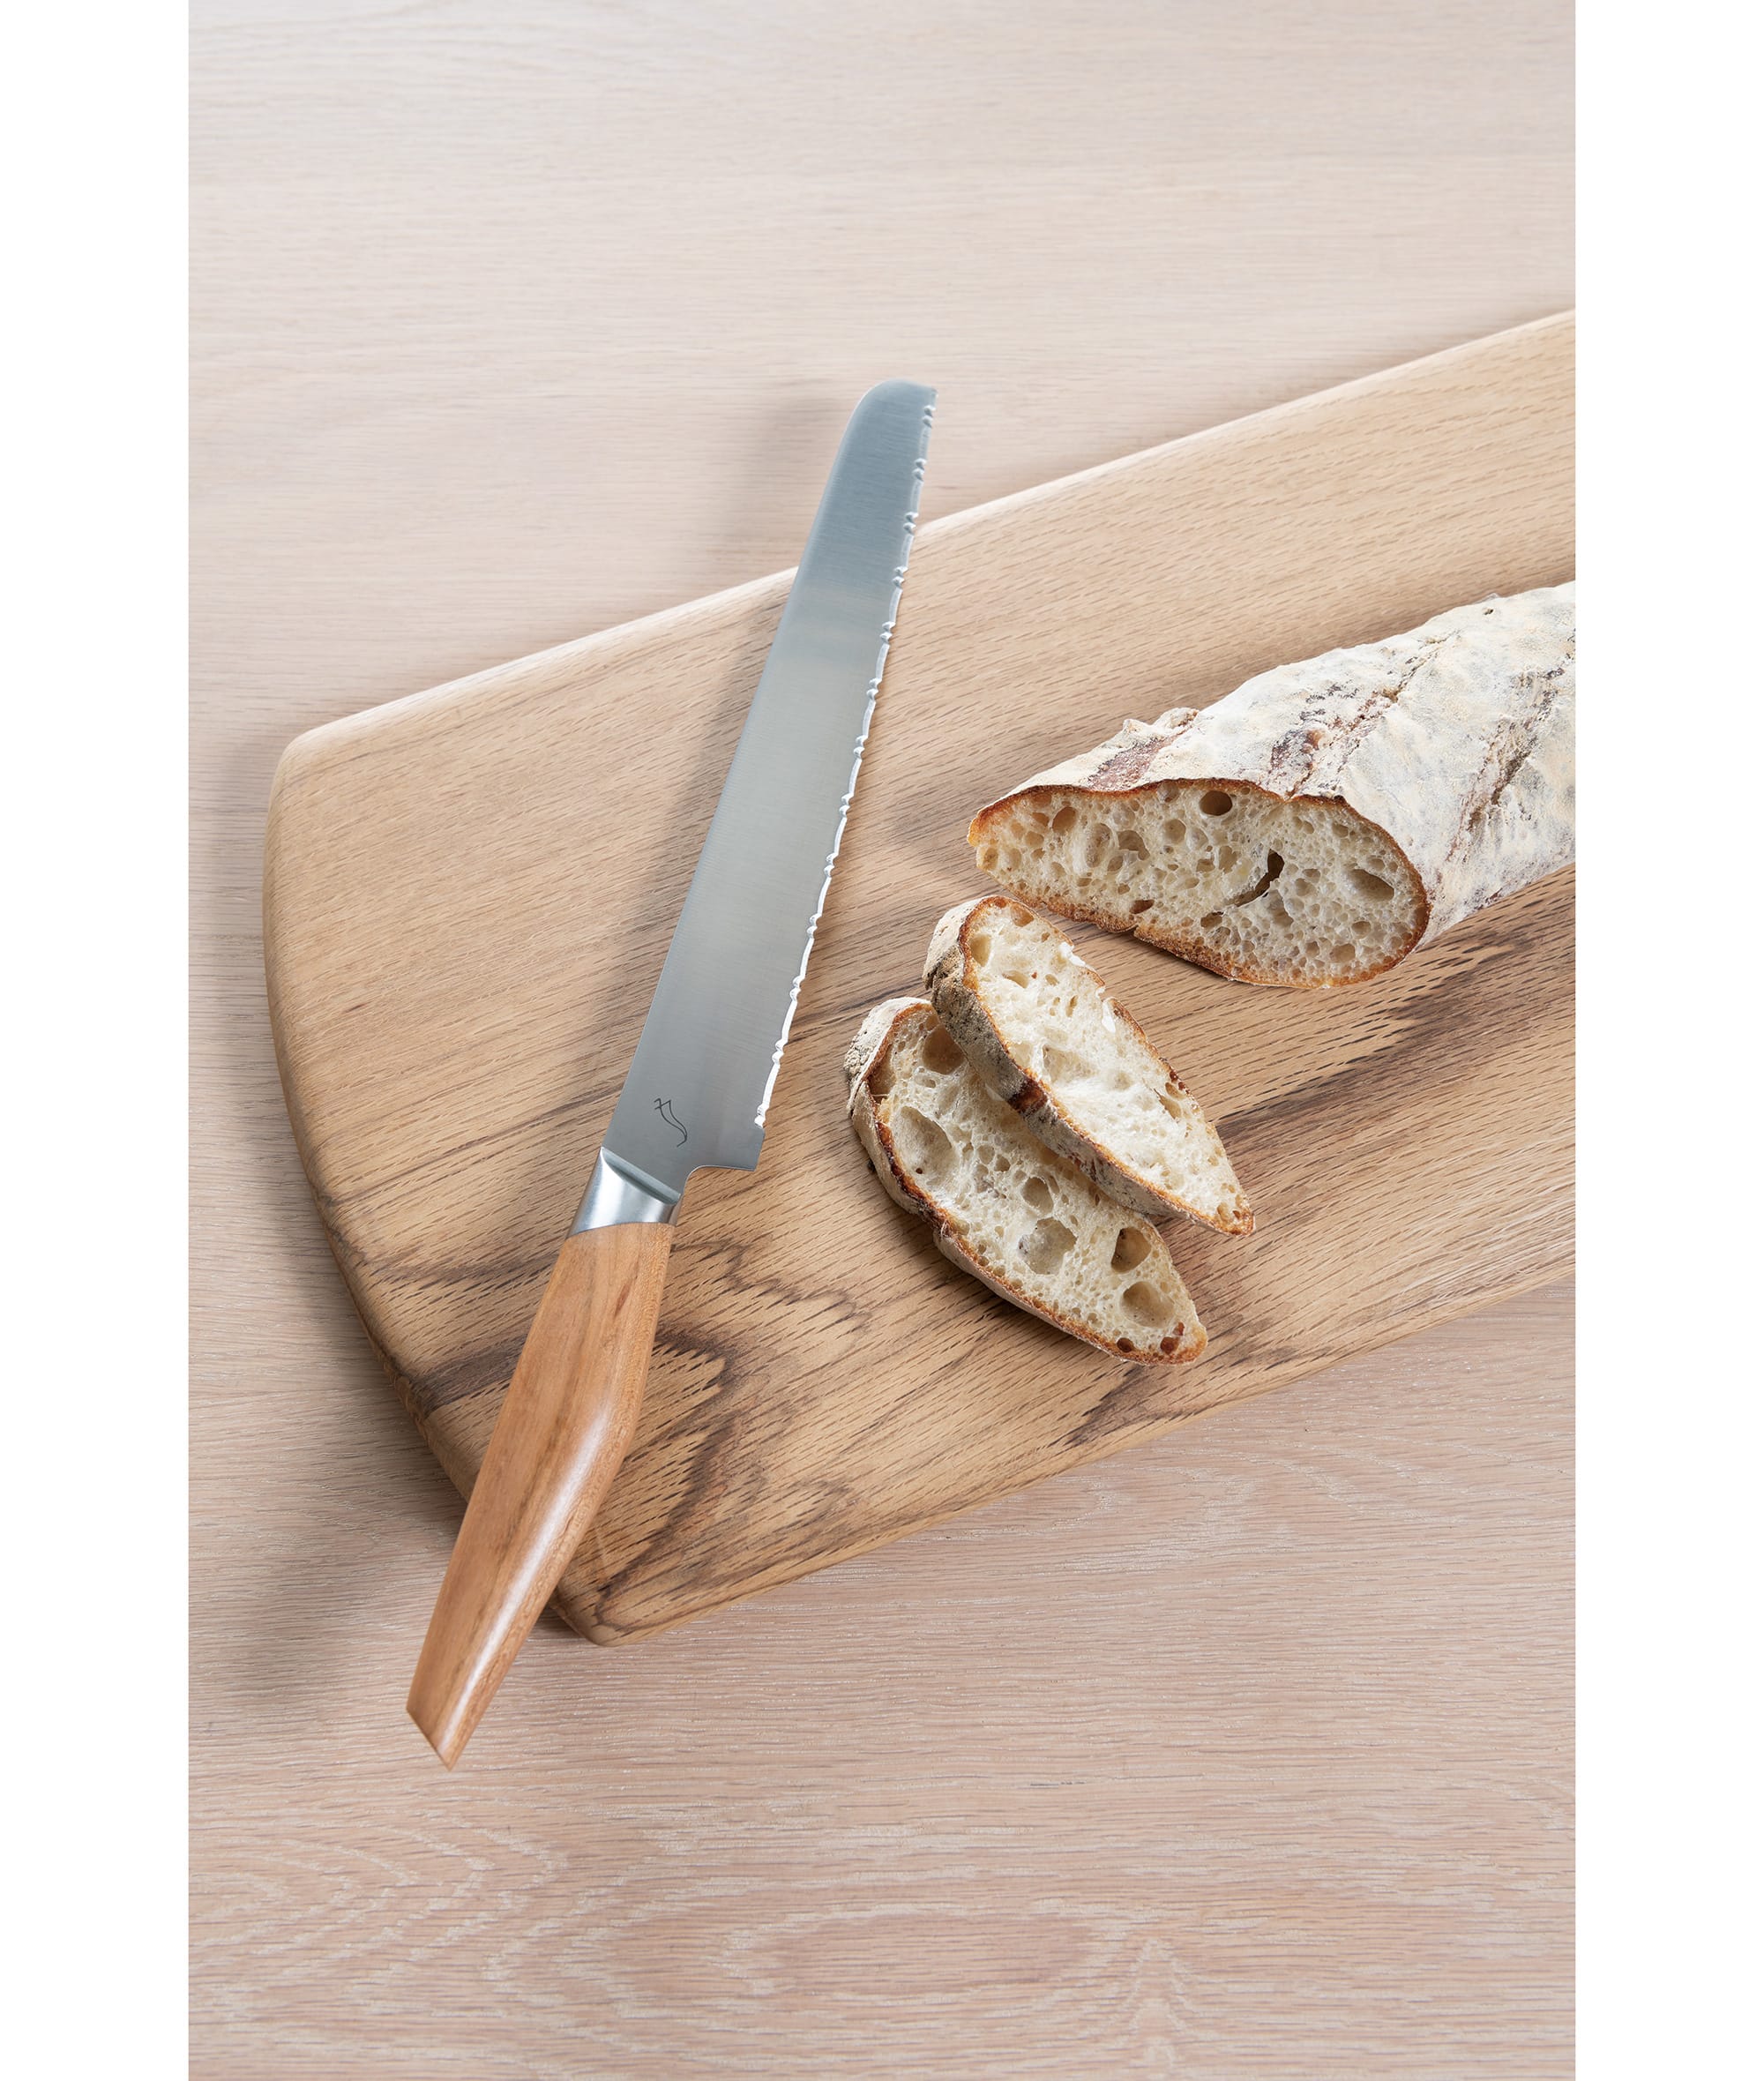 パン切り包丁は独自の大小のギザ刃を交互に組み合わせることで、どのようなパンでも簡単に美しく切ることができる。